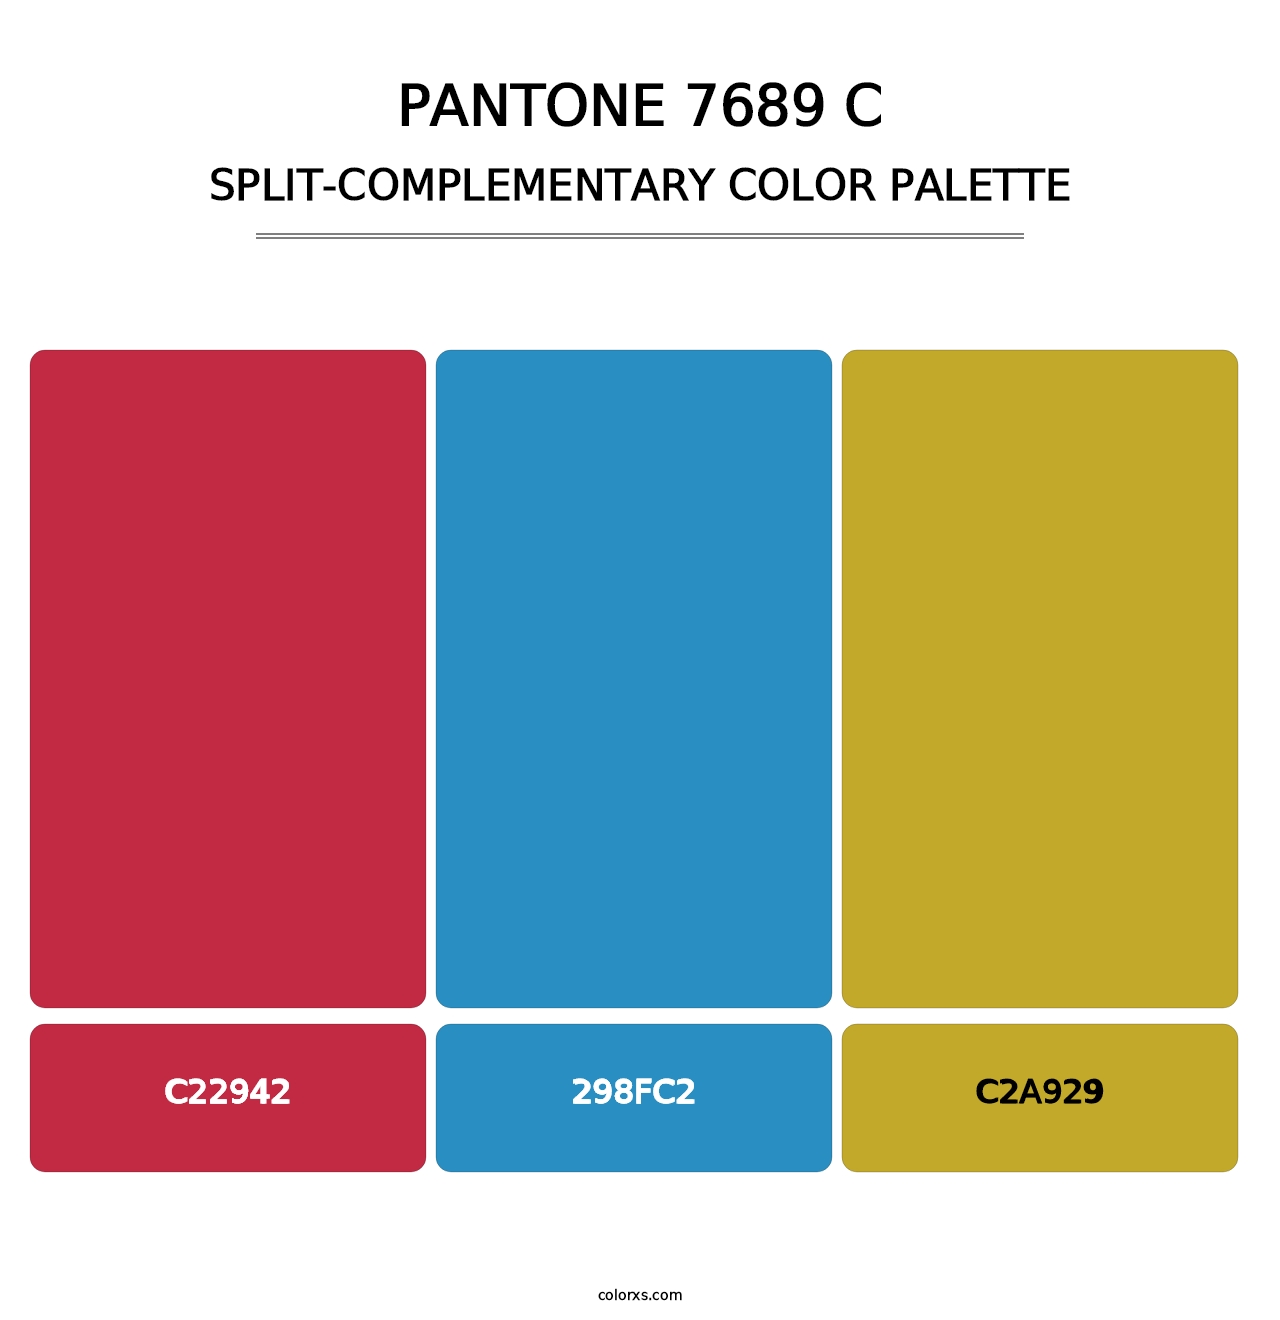 PANTONE 7689 C - Split-Complementary Color Palette